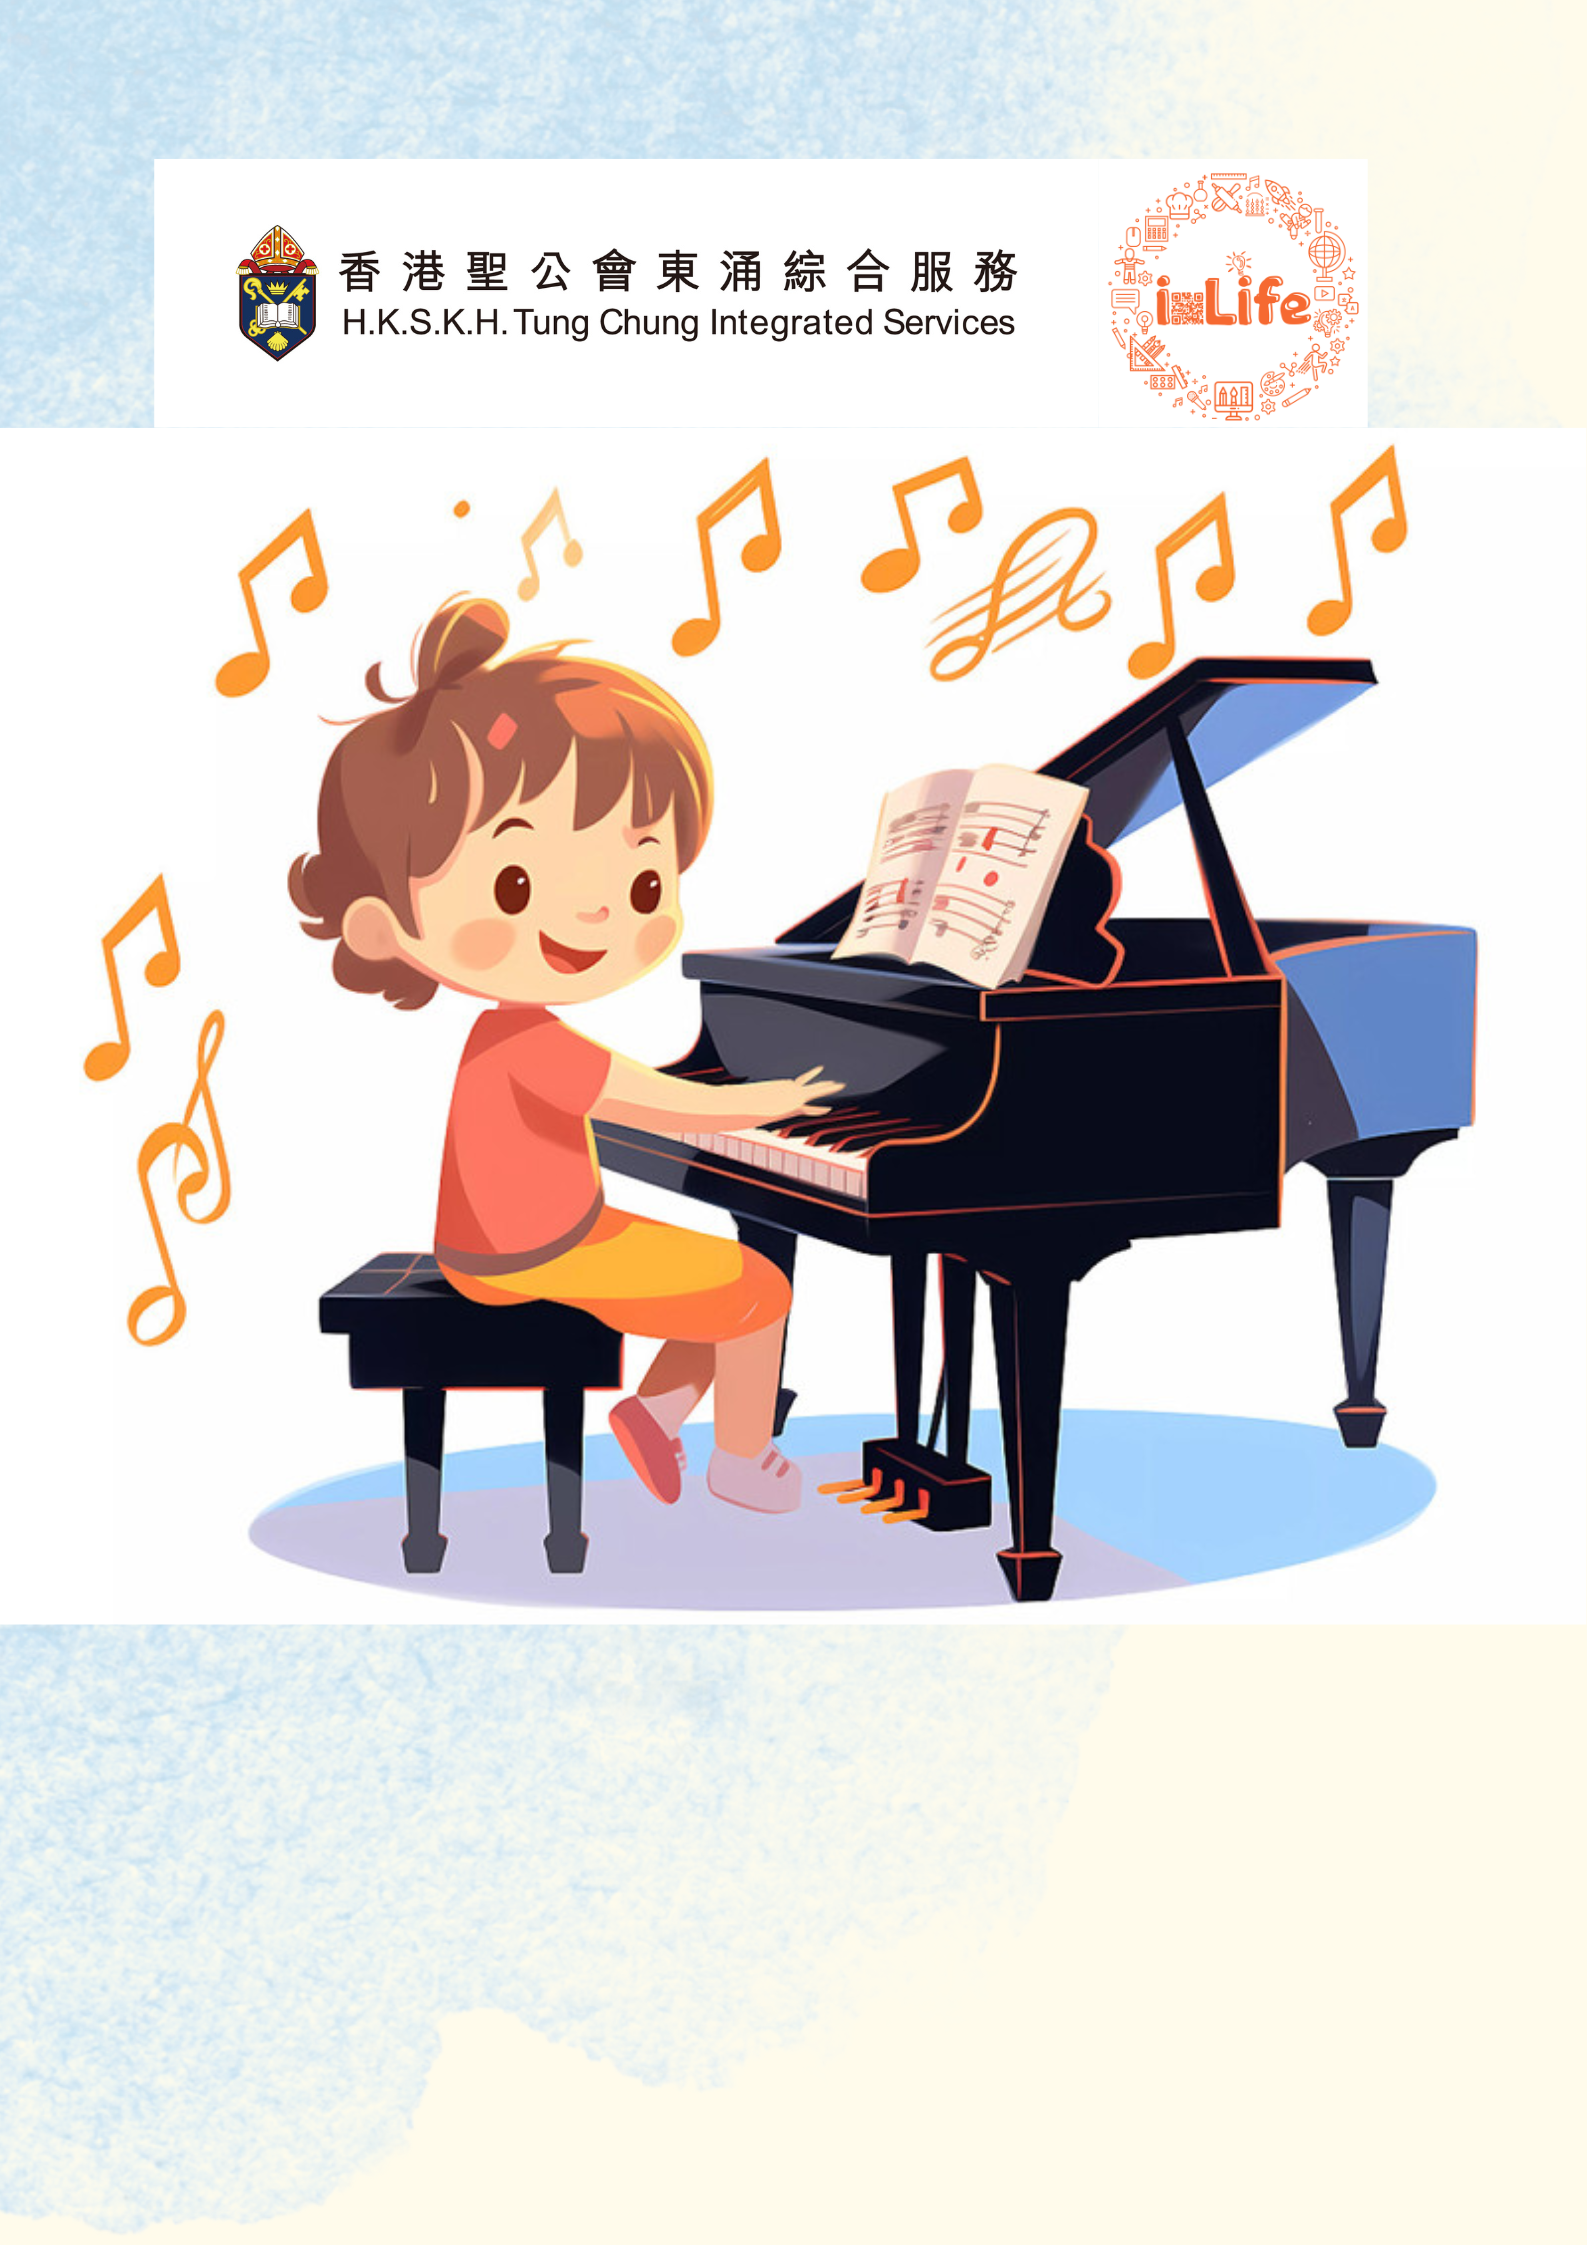 鋼琴(個別教授，富東) 4月 陳琪薇